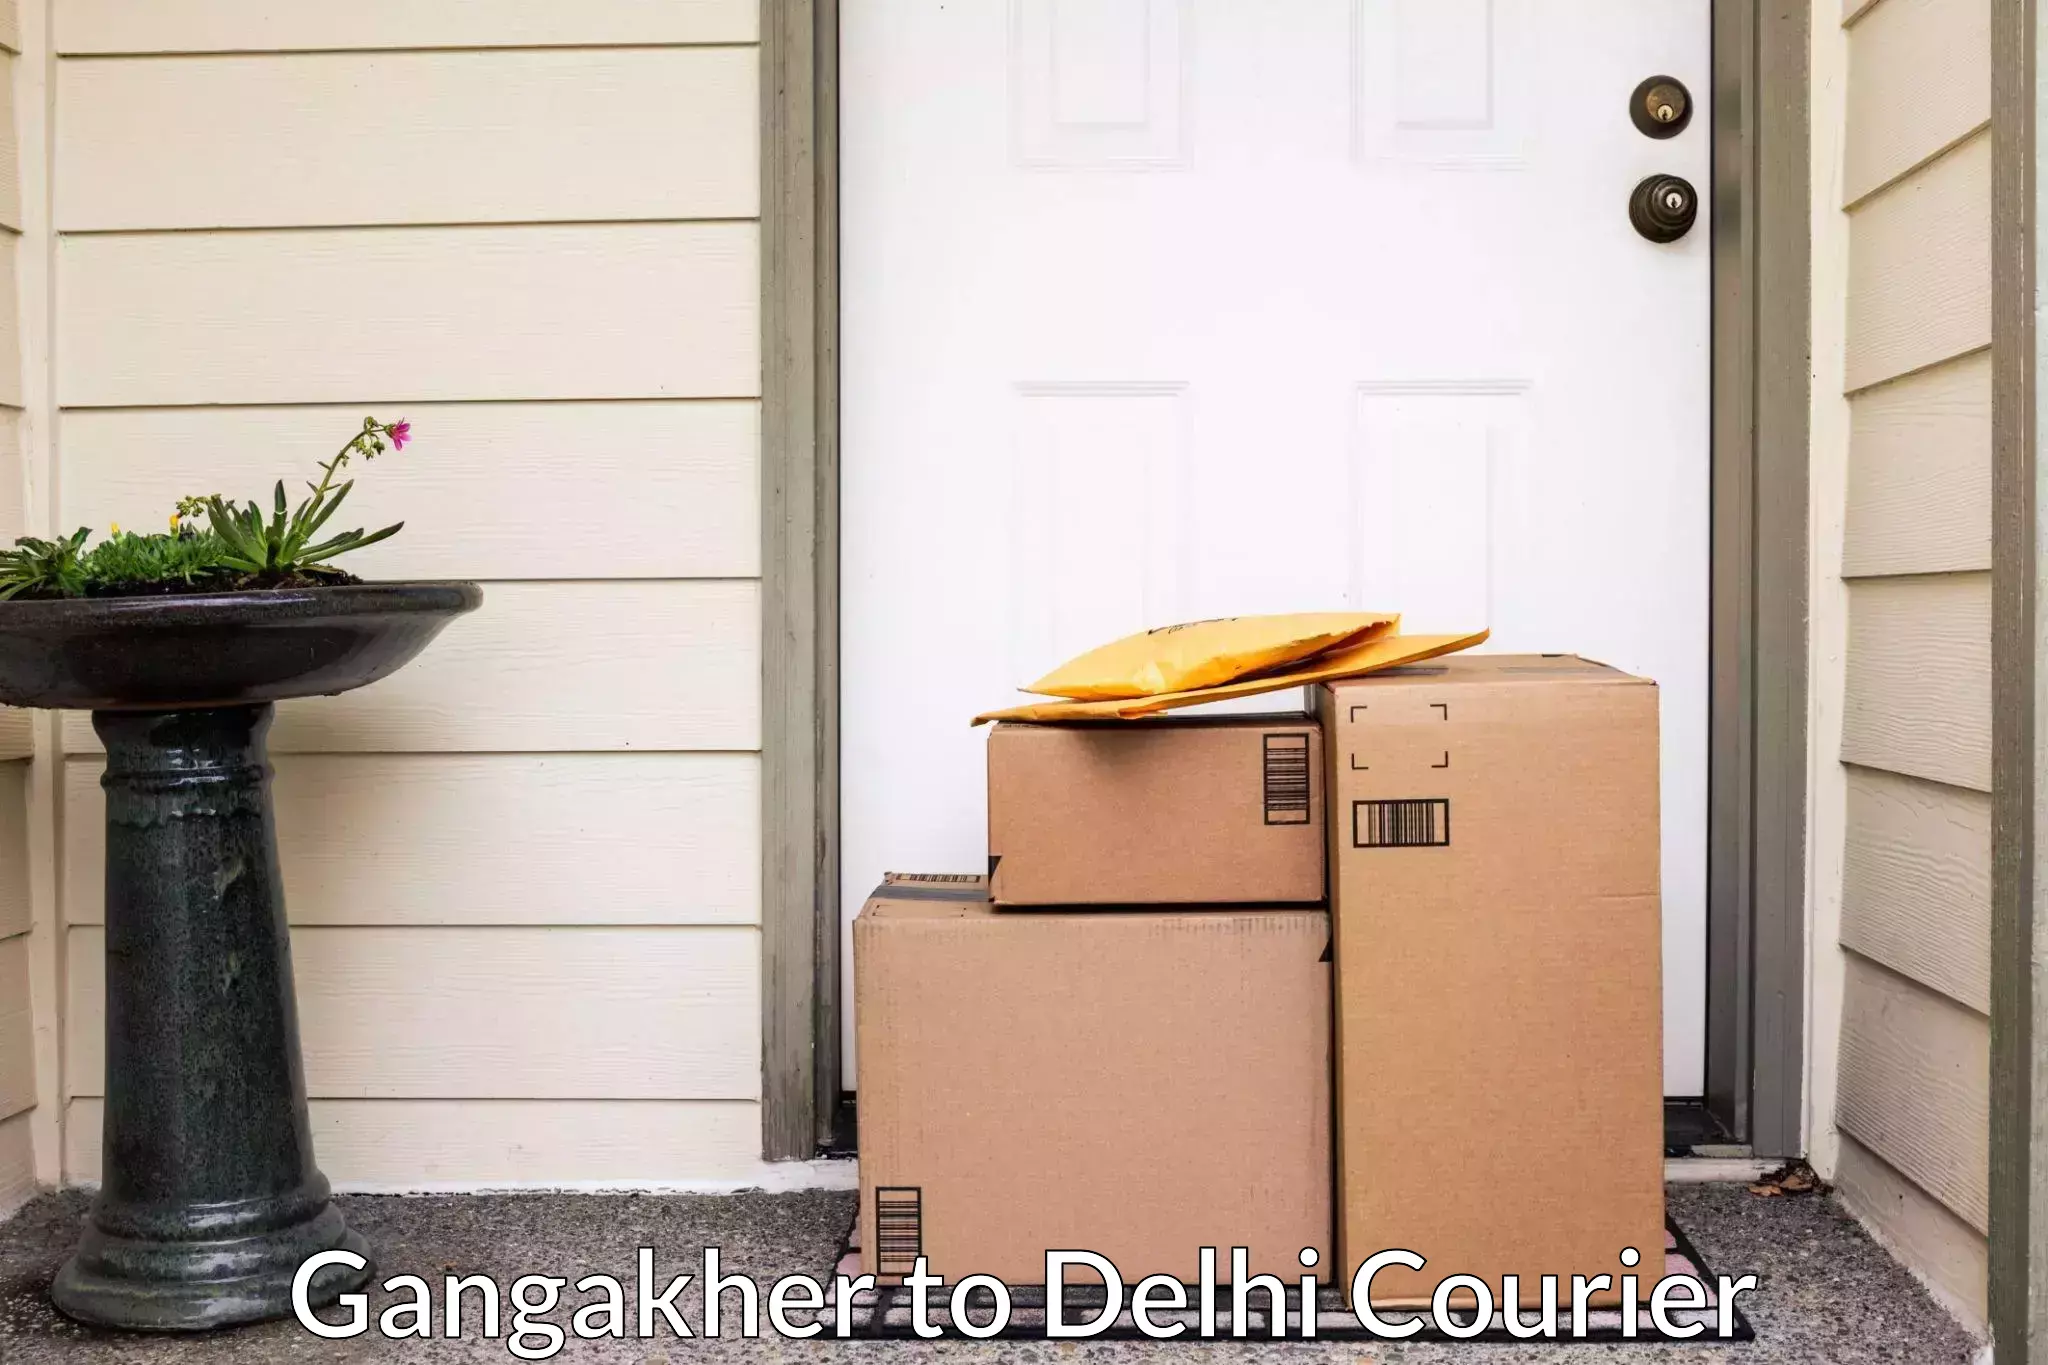 Full-service household moving Gangakher to University of Delhi